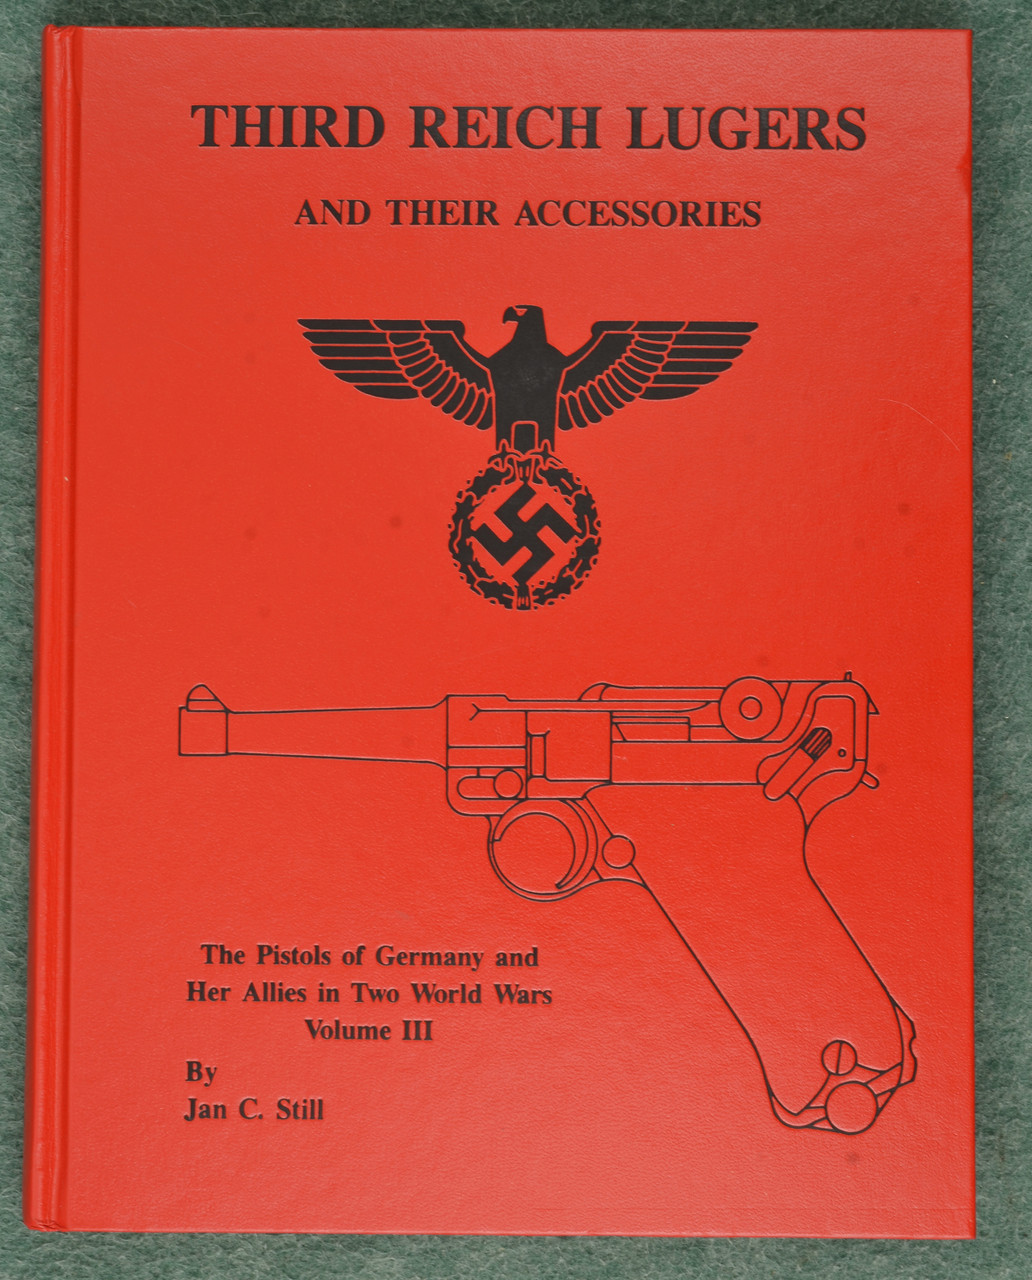 BOOK THIRD REICH LUGERS - C54863